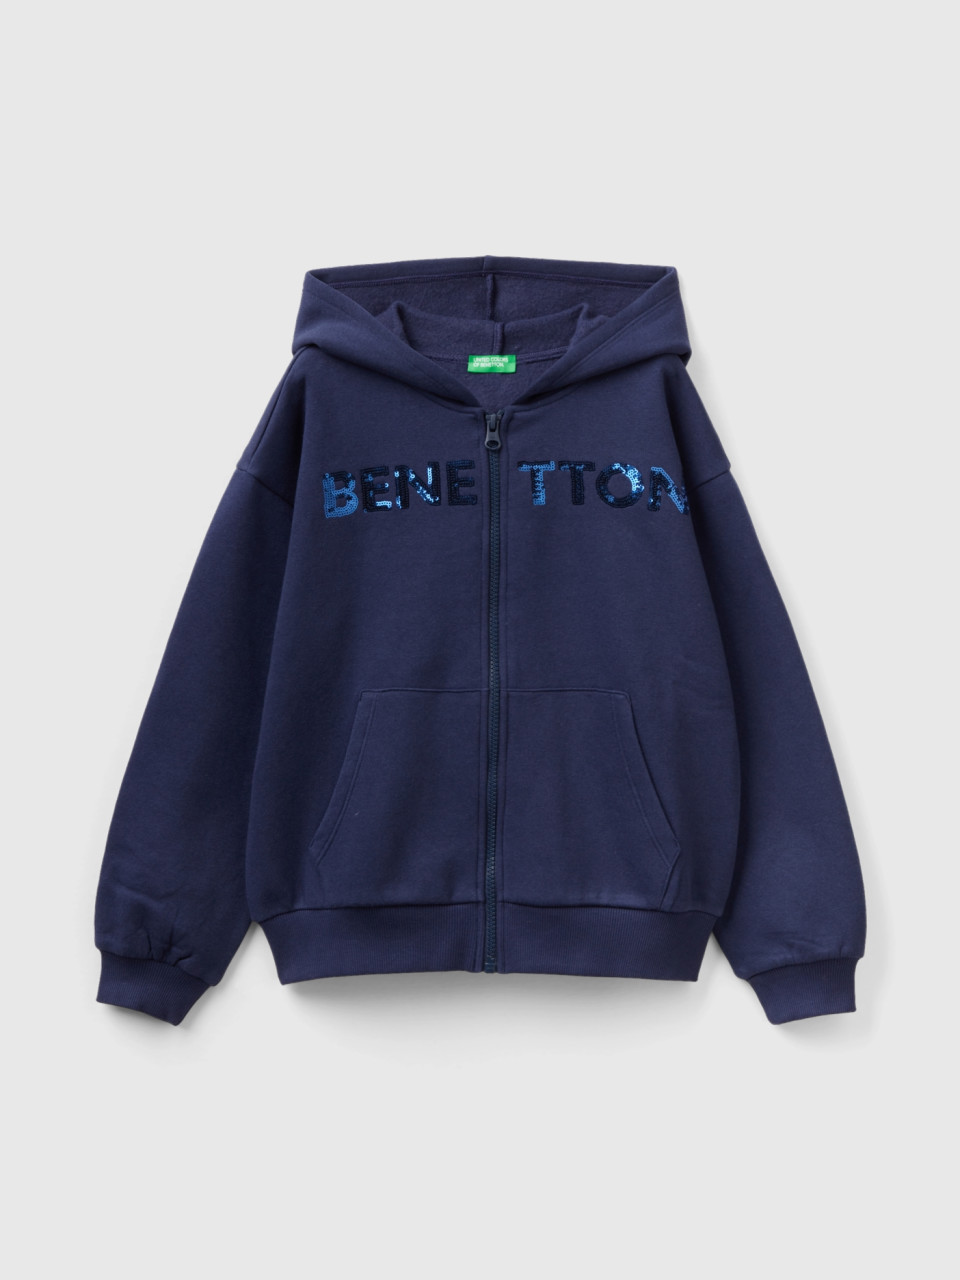 Benetton, Sweater Mit Zip Und Pailletten, Dunkelblau, female